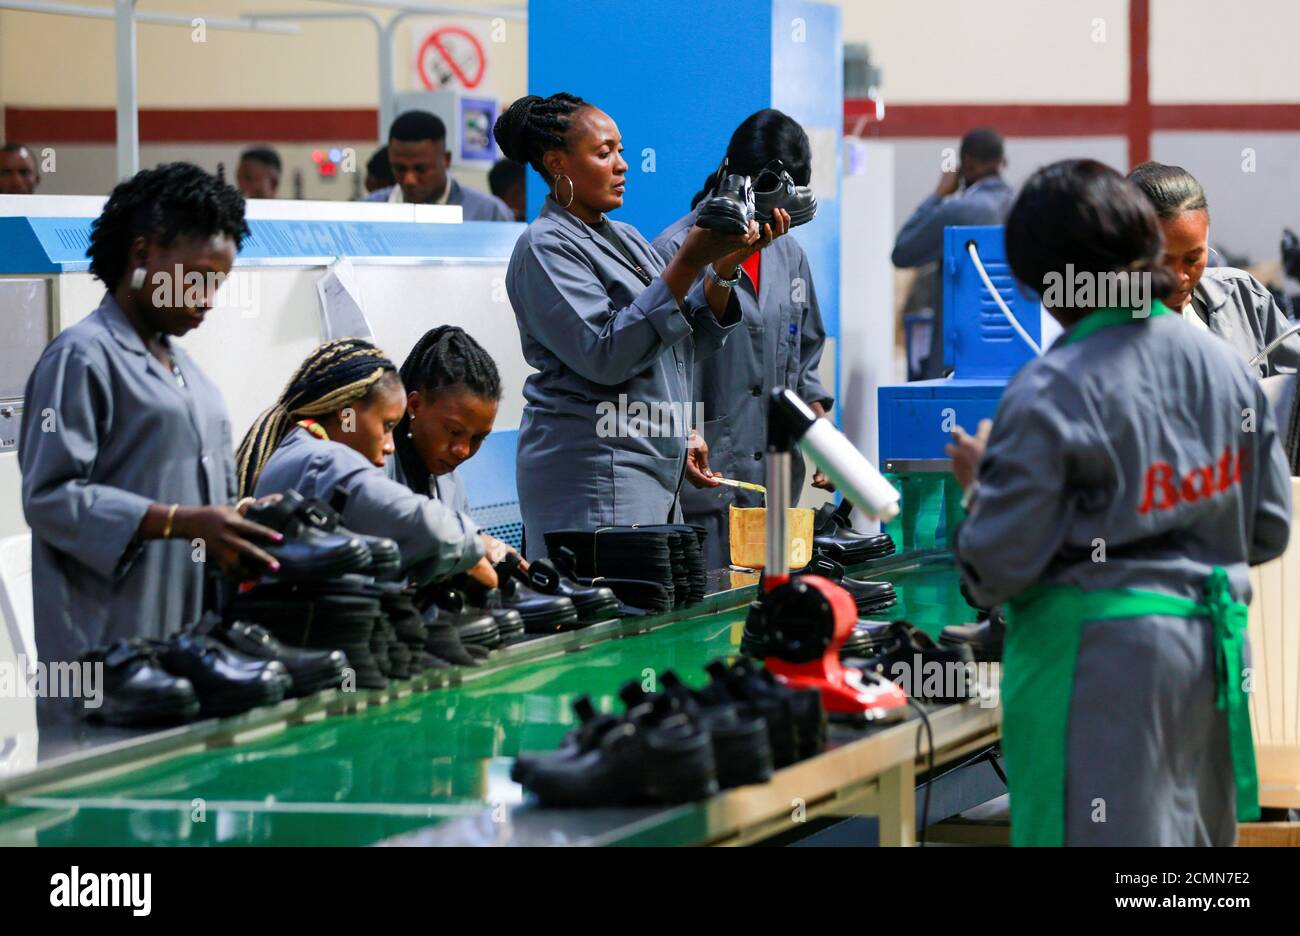 Le lavoratrici ispezionano le scarpe in una fabbrica di scarpe Bata ad Abuja, Nigeria, 13 gennaio 2020. Foto scattata il 13 gennaio 2020. REUTERS/Afolabi Sotunde Foto Stock